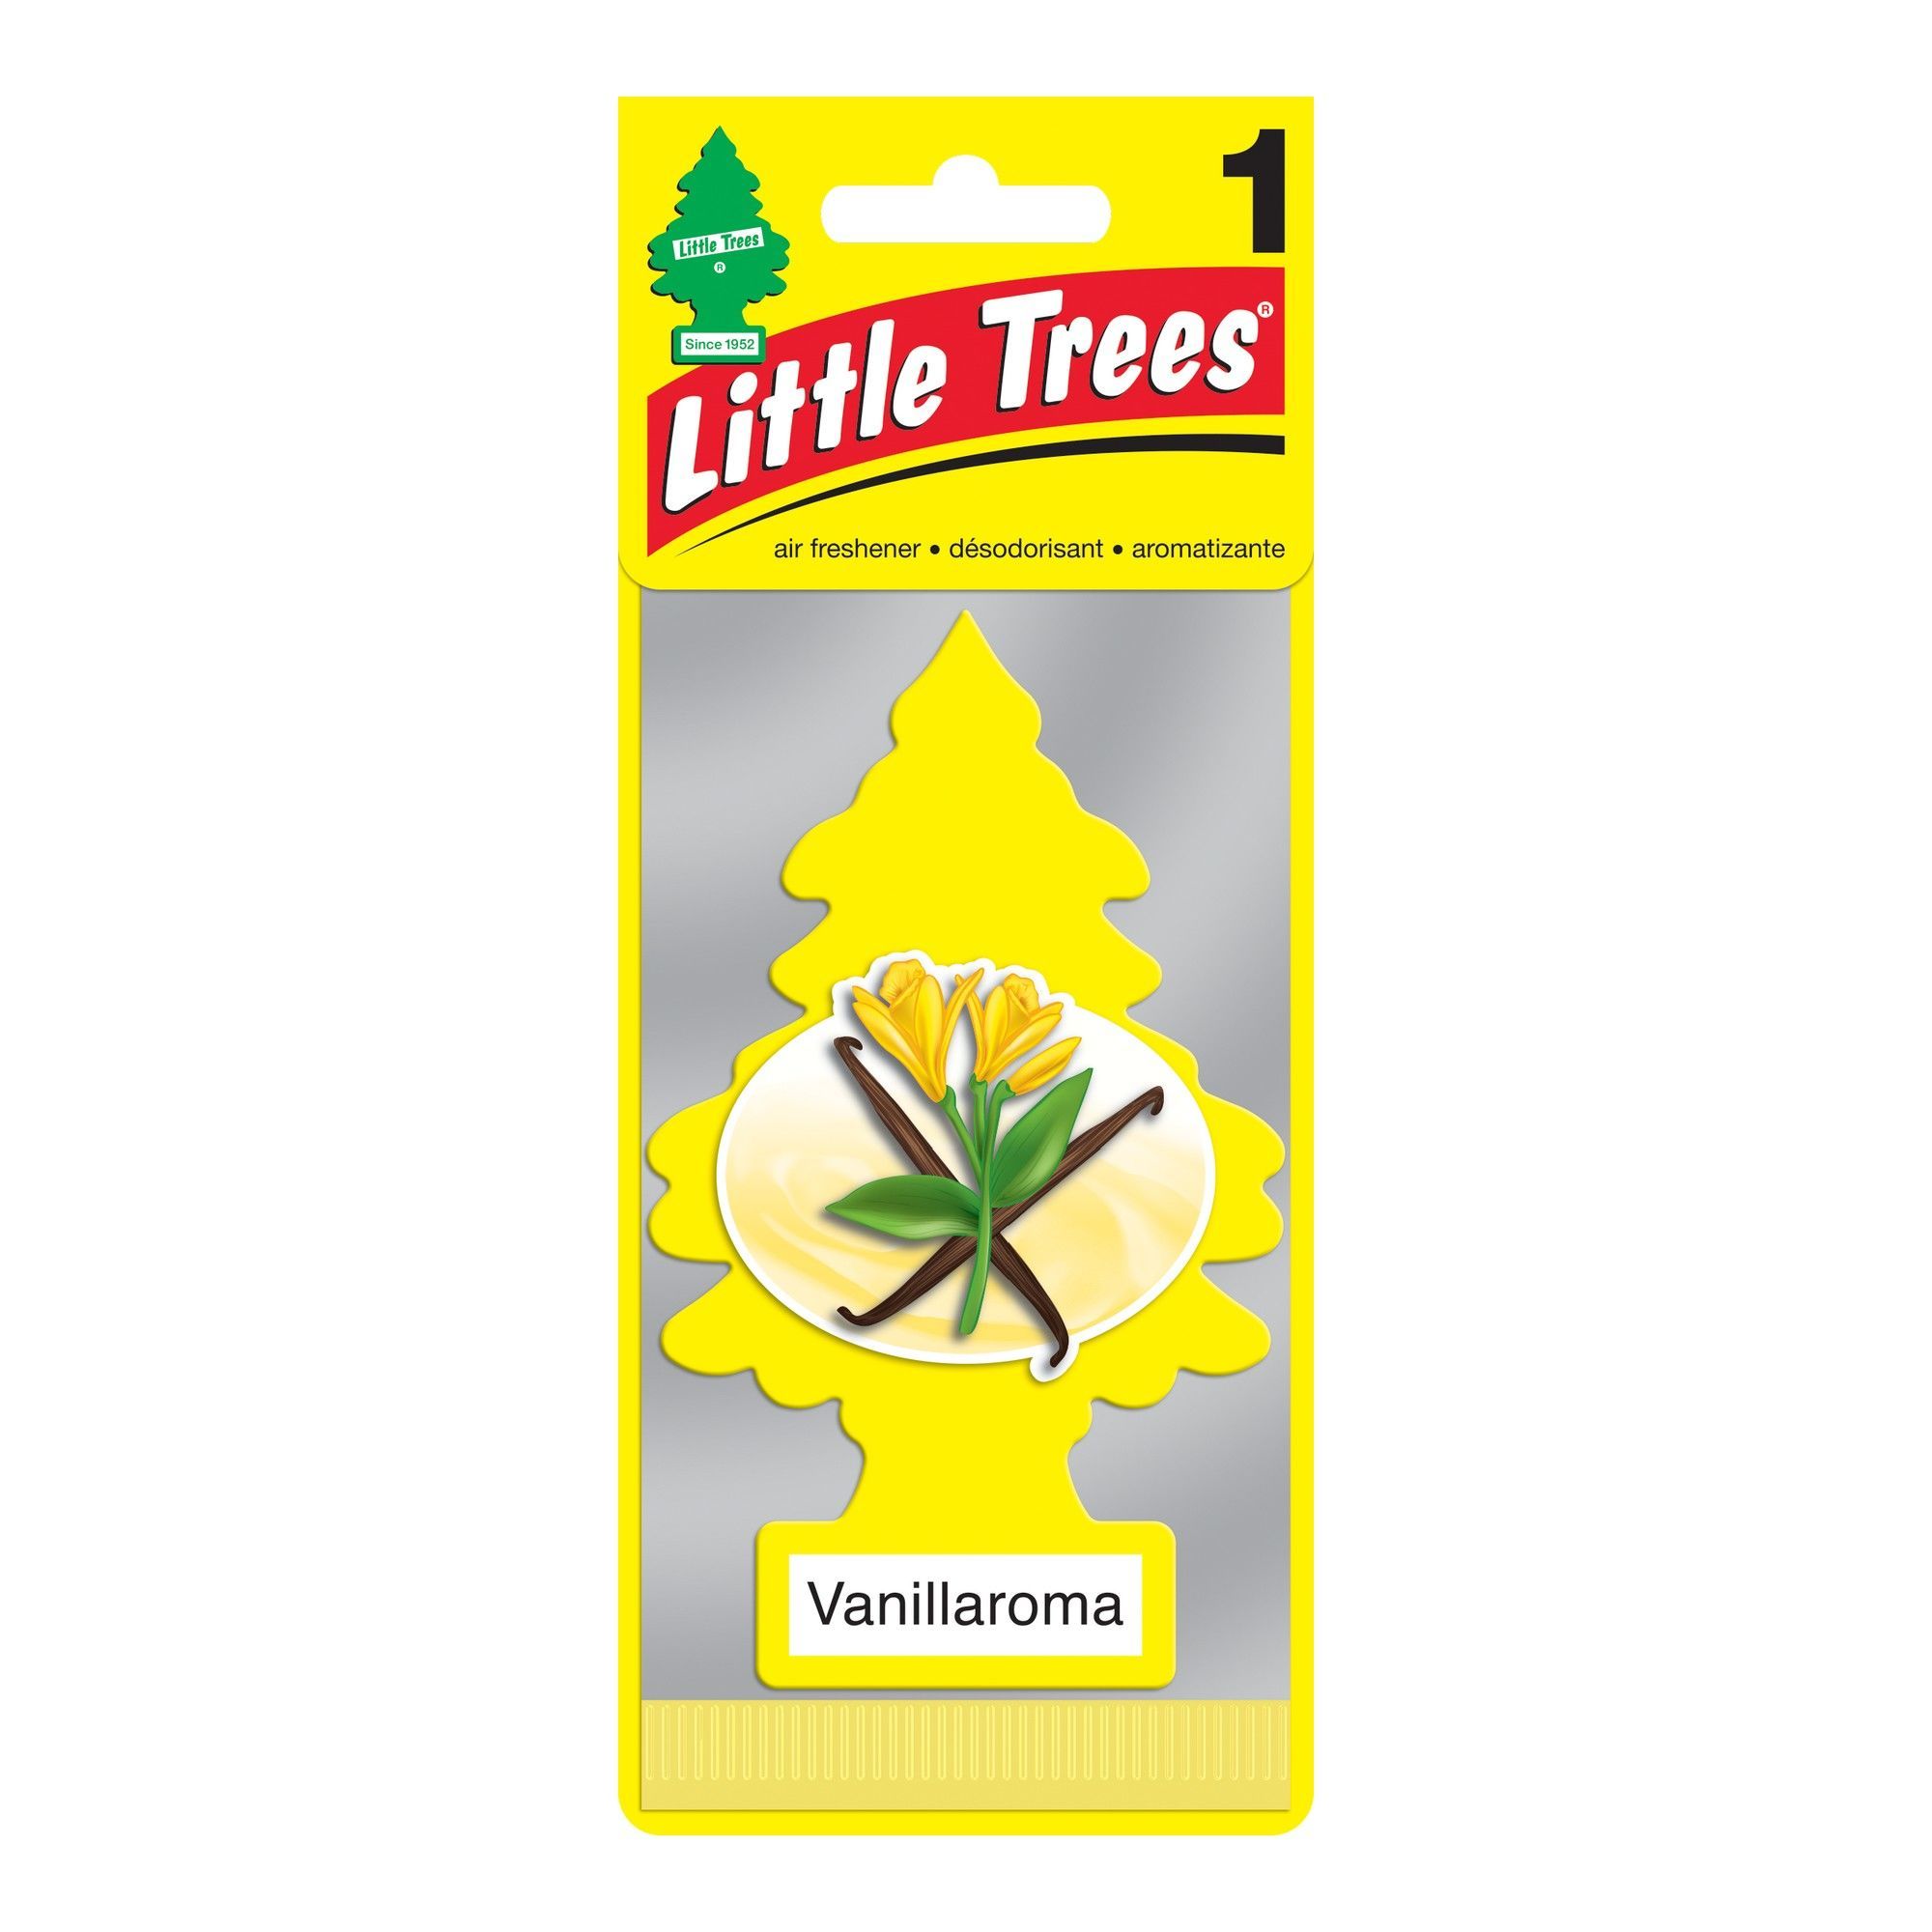 Désodorisant pour voiture Little Tree, jaune, vanillaroma de Little Trees